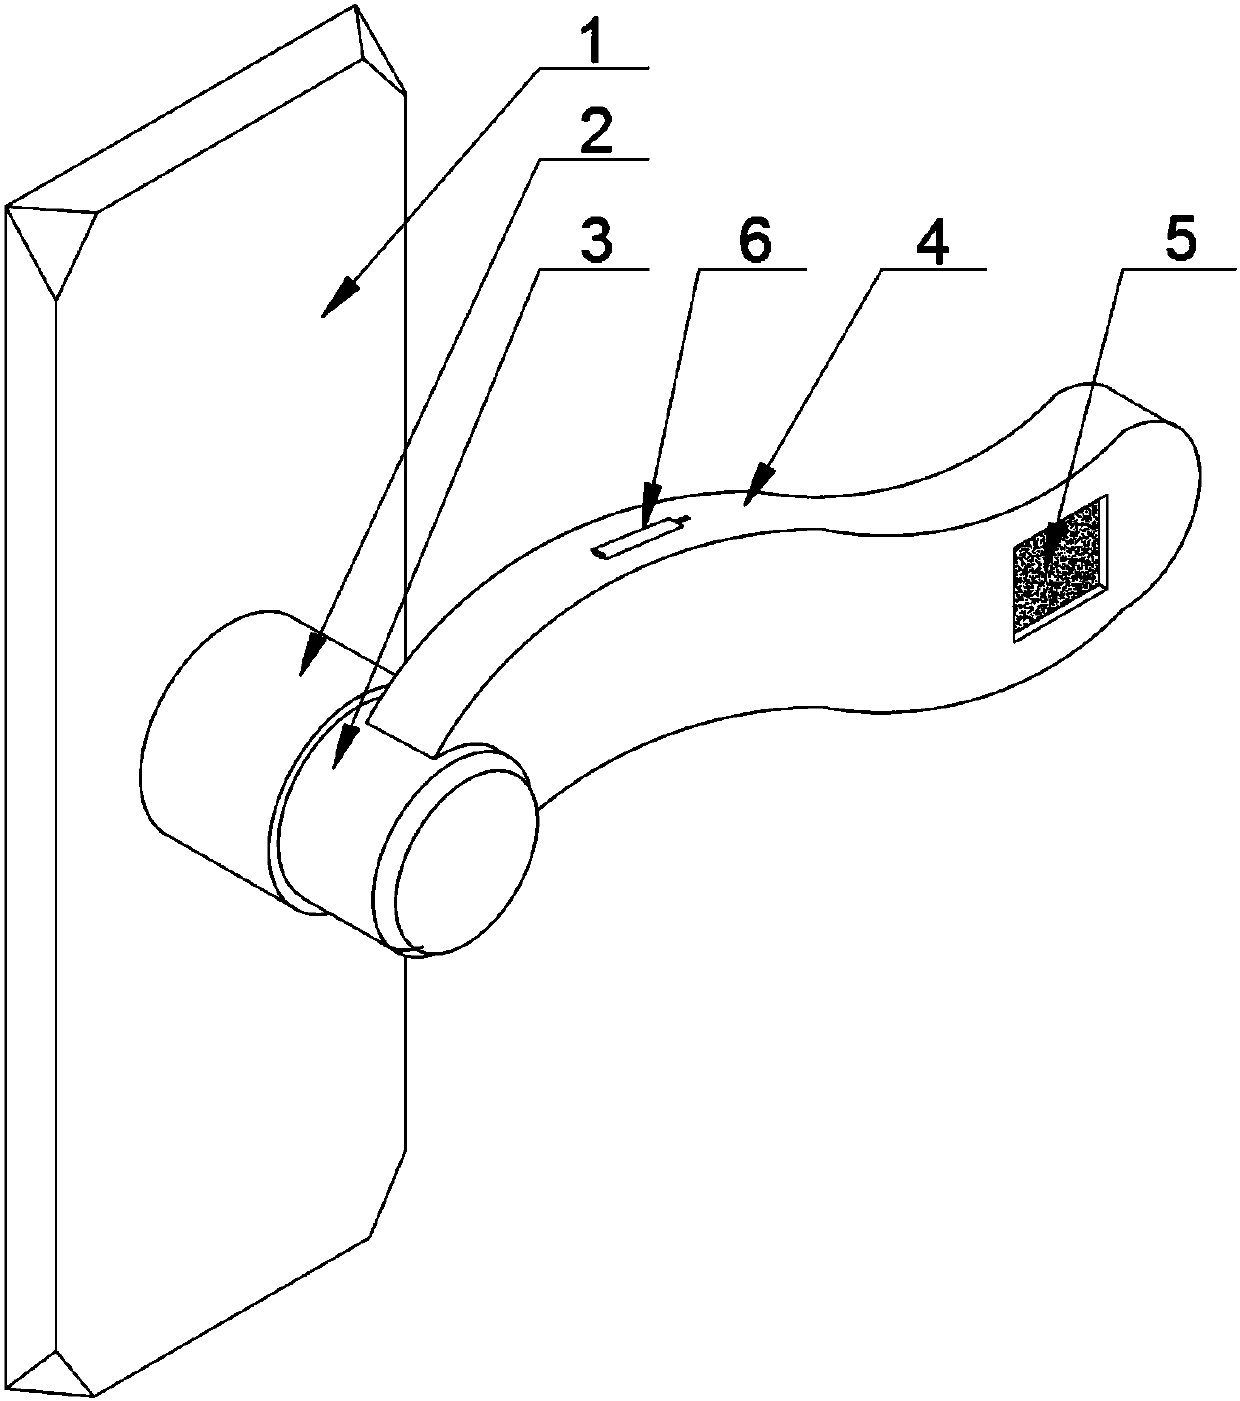 Handle and handle head connection method of intelligent door lock